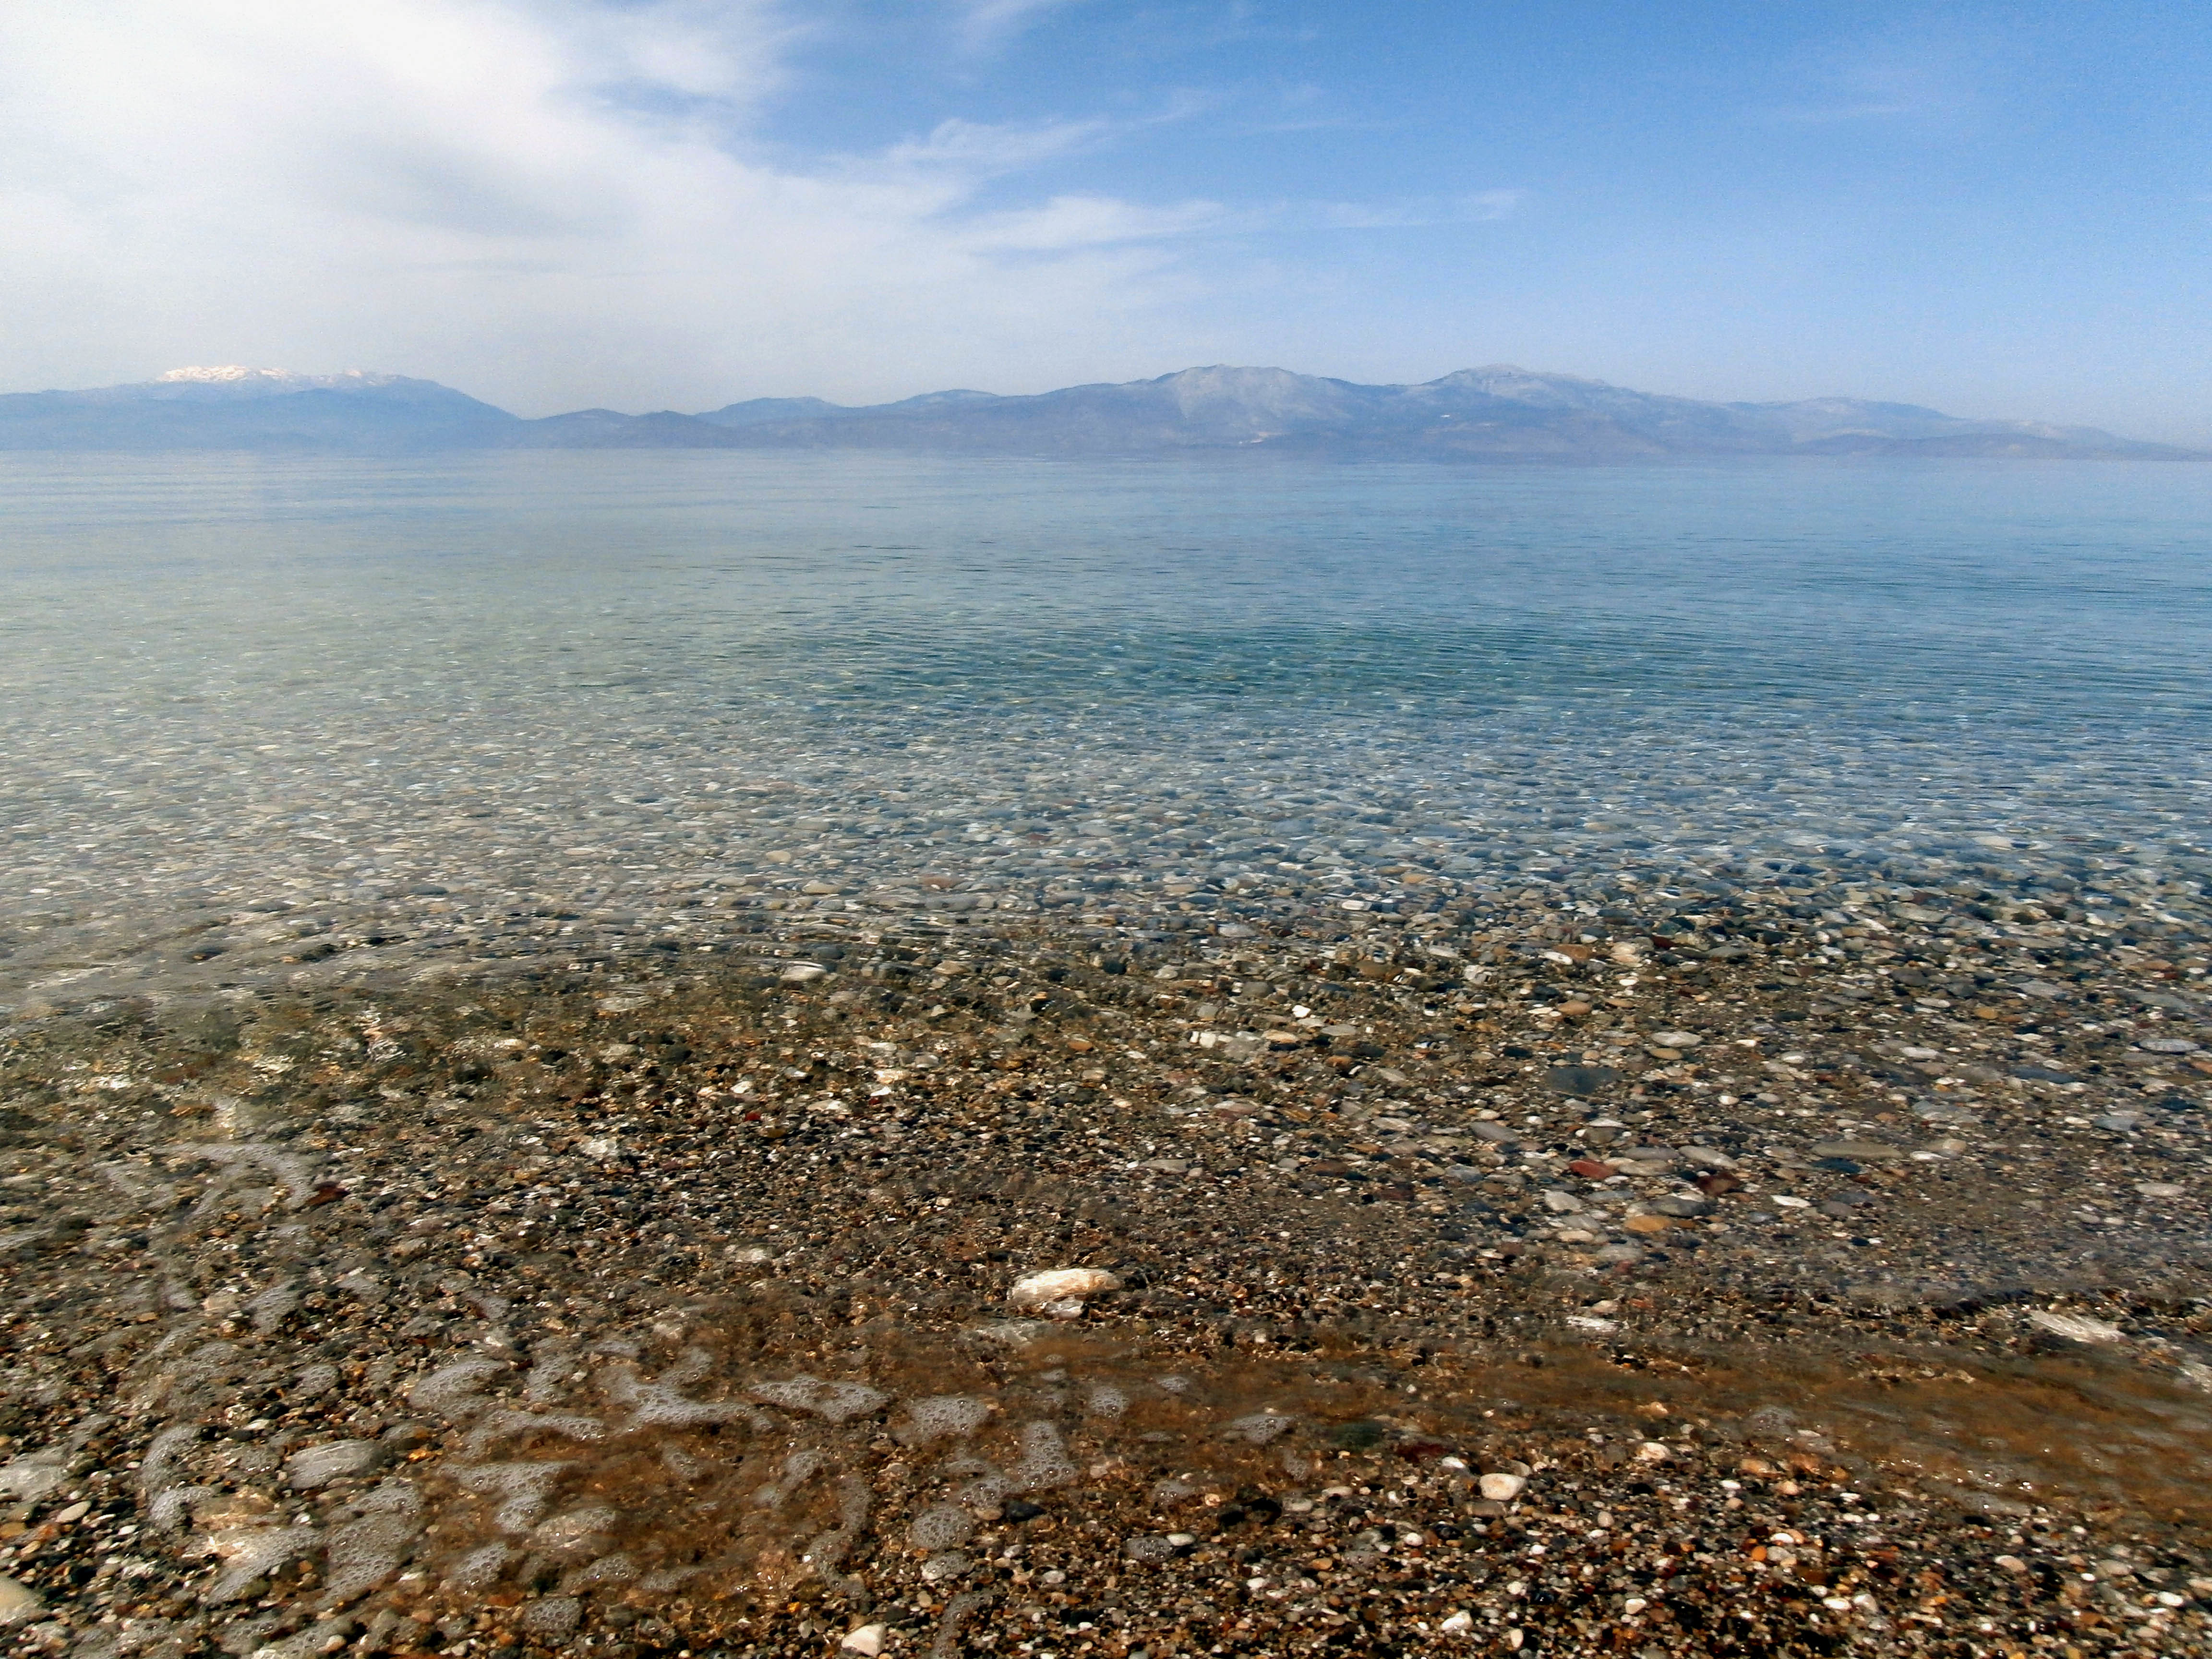 Πεντακάθαρες οι ελληνικές θάλασσες! Γάργαρα τα ελληνικά νερά σύμφωνα με την Κομισιόν σε ποσοστό 93,3%!